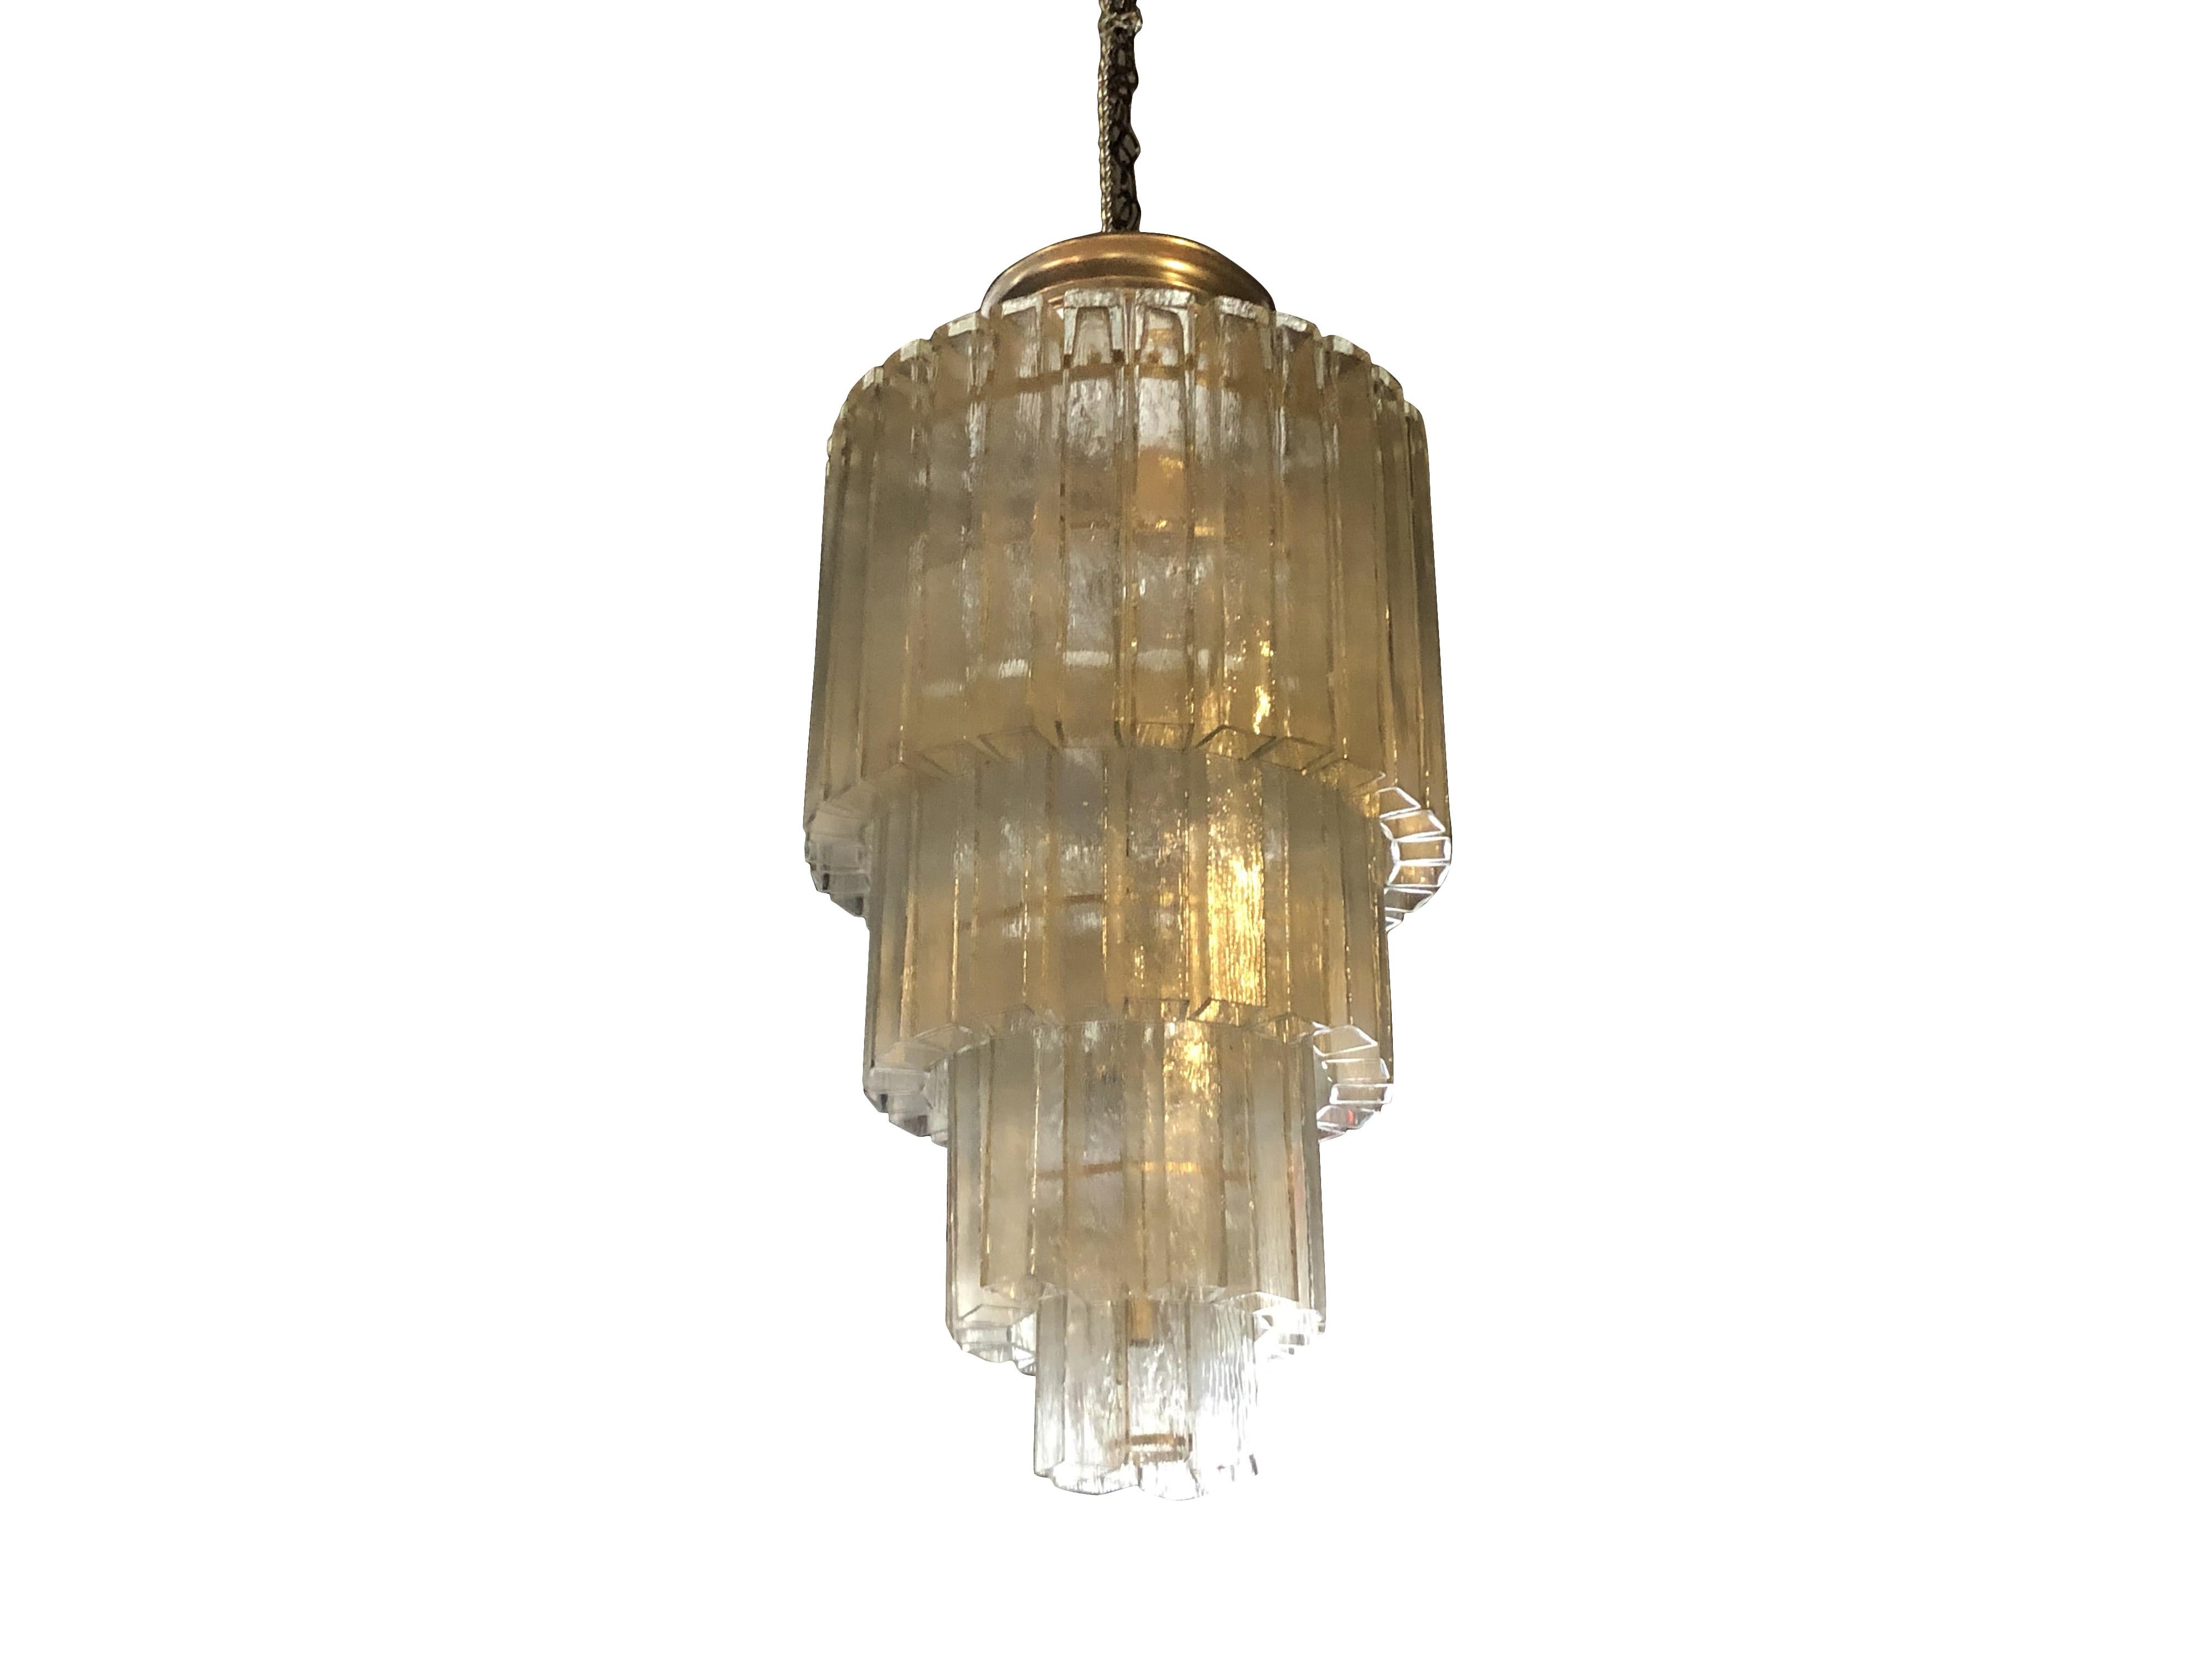 Ein Vintage Mid-Century Modern Italienisch Murano-Glas-Kronleuchter, Anhänger aus Röhren aus Kristall Quadrat auf vier Nickel-Metallrahmen, in gutem Zustand gemacht. Die Deckenleuchte, Lampe hat sechzehn Lichtanschlüsse. Die Kristallgläser sind